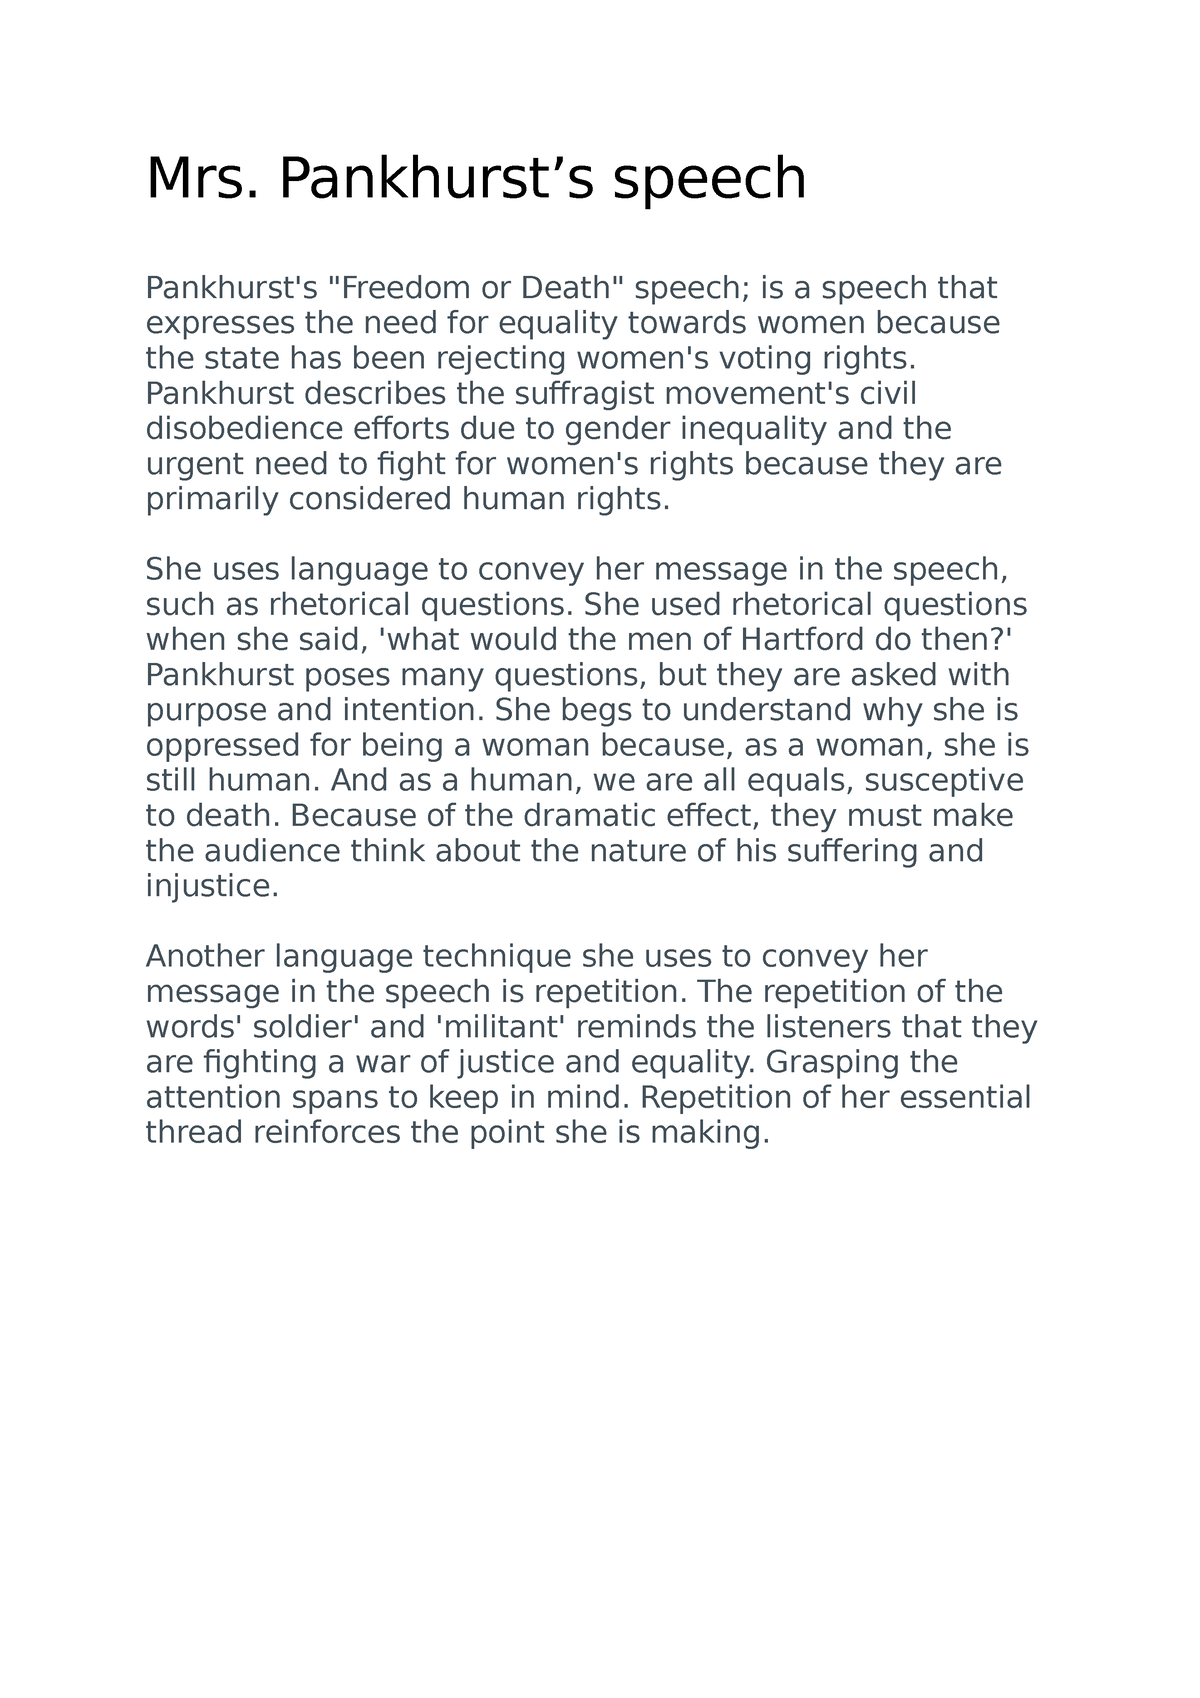 Mrs.pankhurst speach - essay - Mrs. Pankhurst’s speech Pankhurst's ...